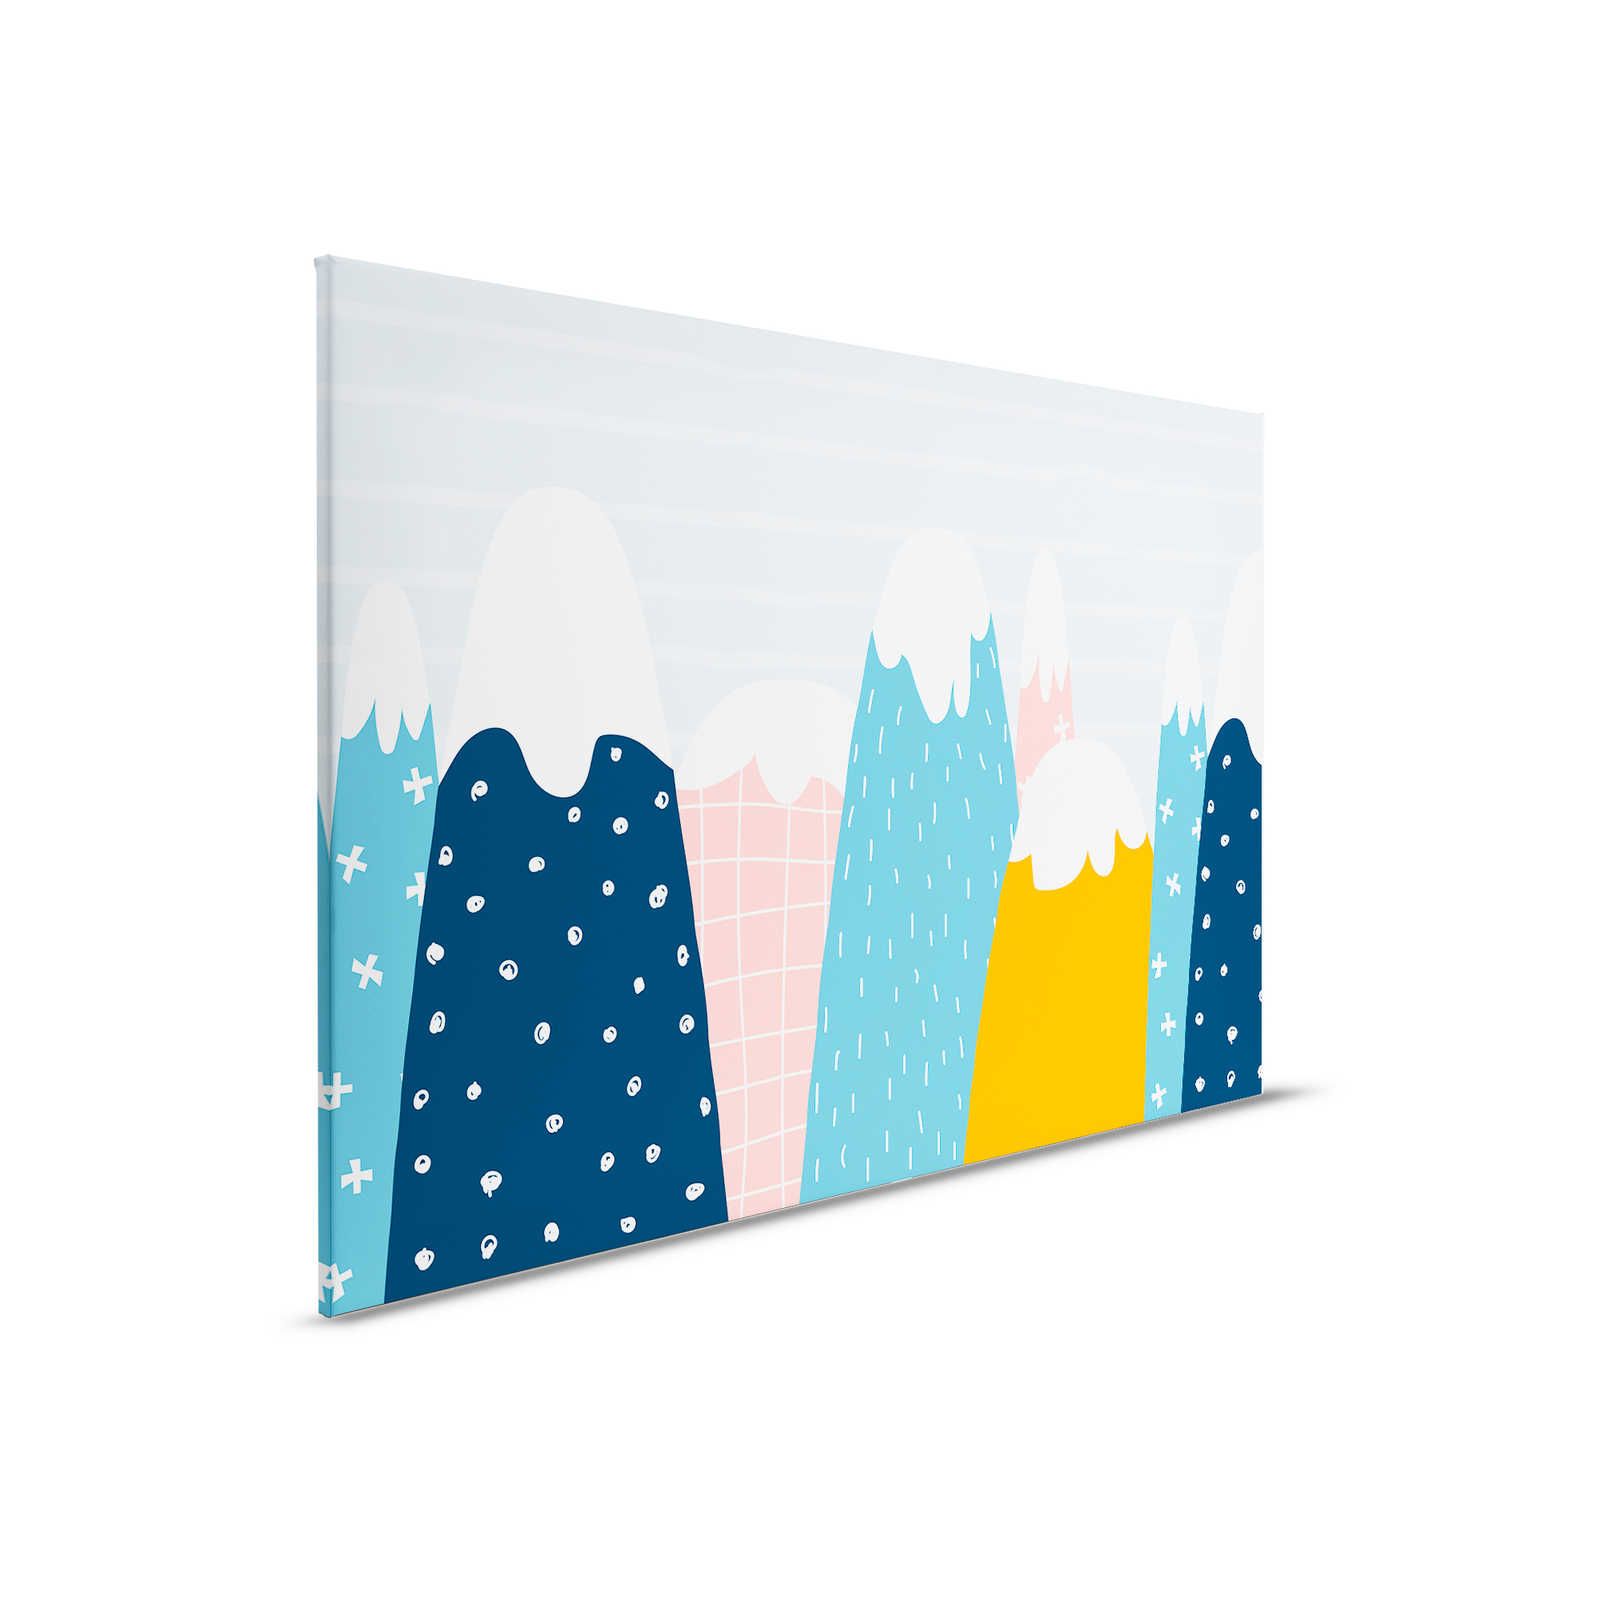 Lienzo con colinas nevadas en estilo pintado - 90 cm x 60 cm
